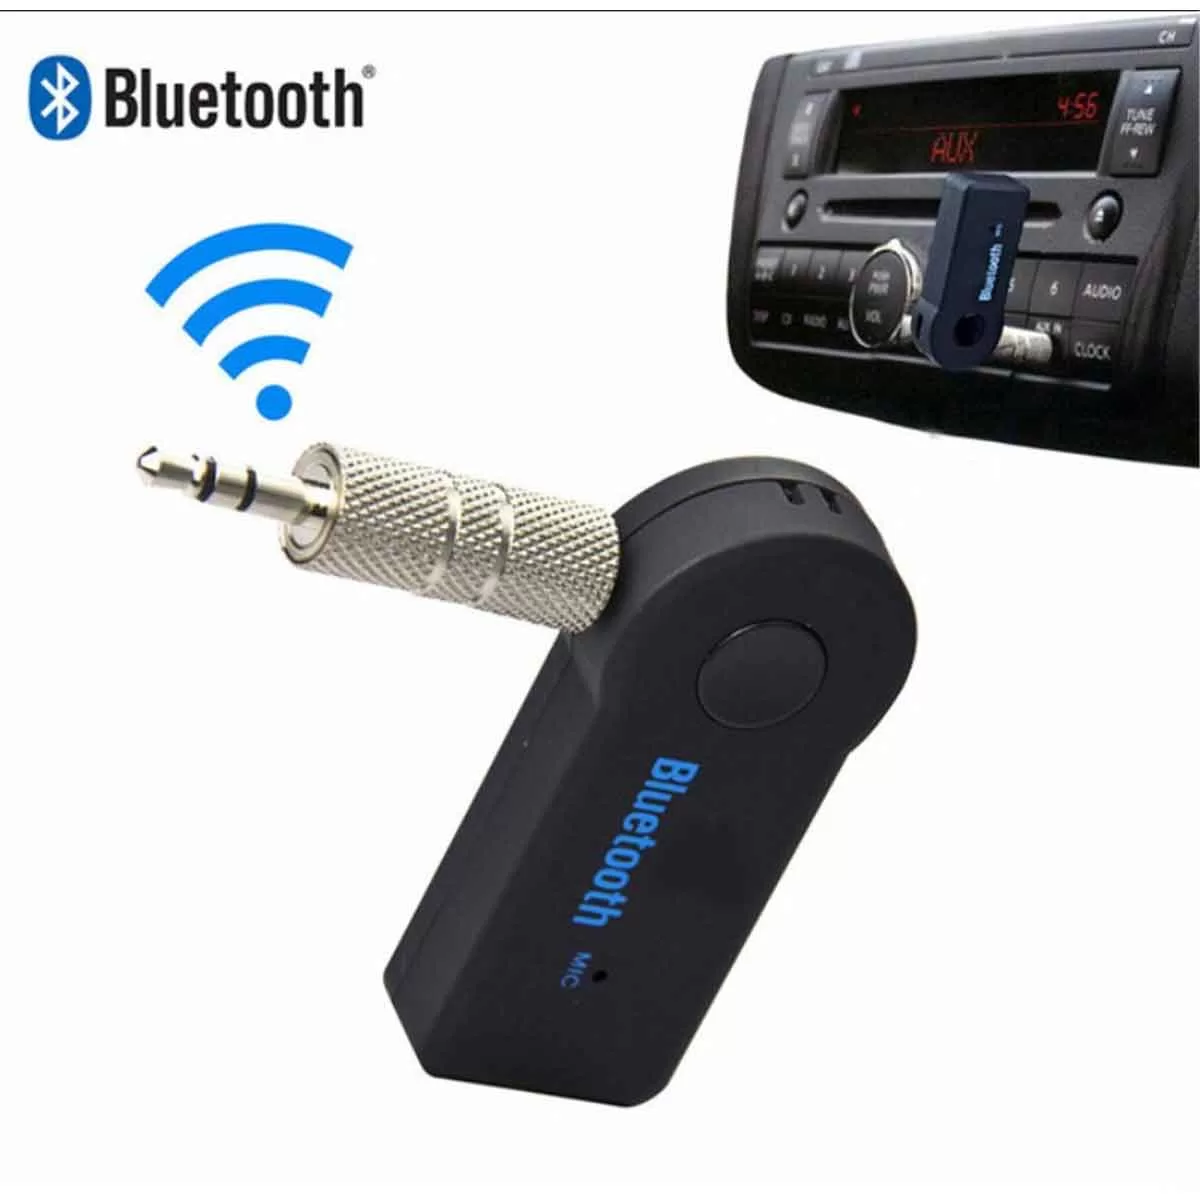 Bluetooth Receiver 3.5mm Jack με Ενσωματωμένο Μικρόφωνο για Αυτοκίνητο BT350